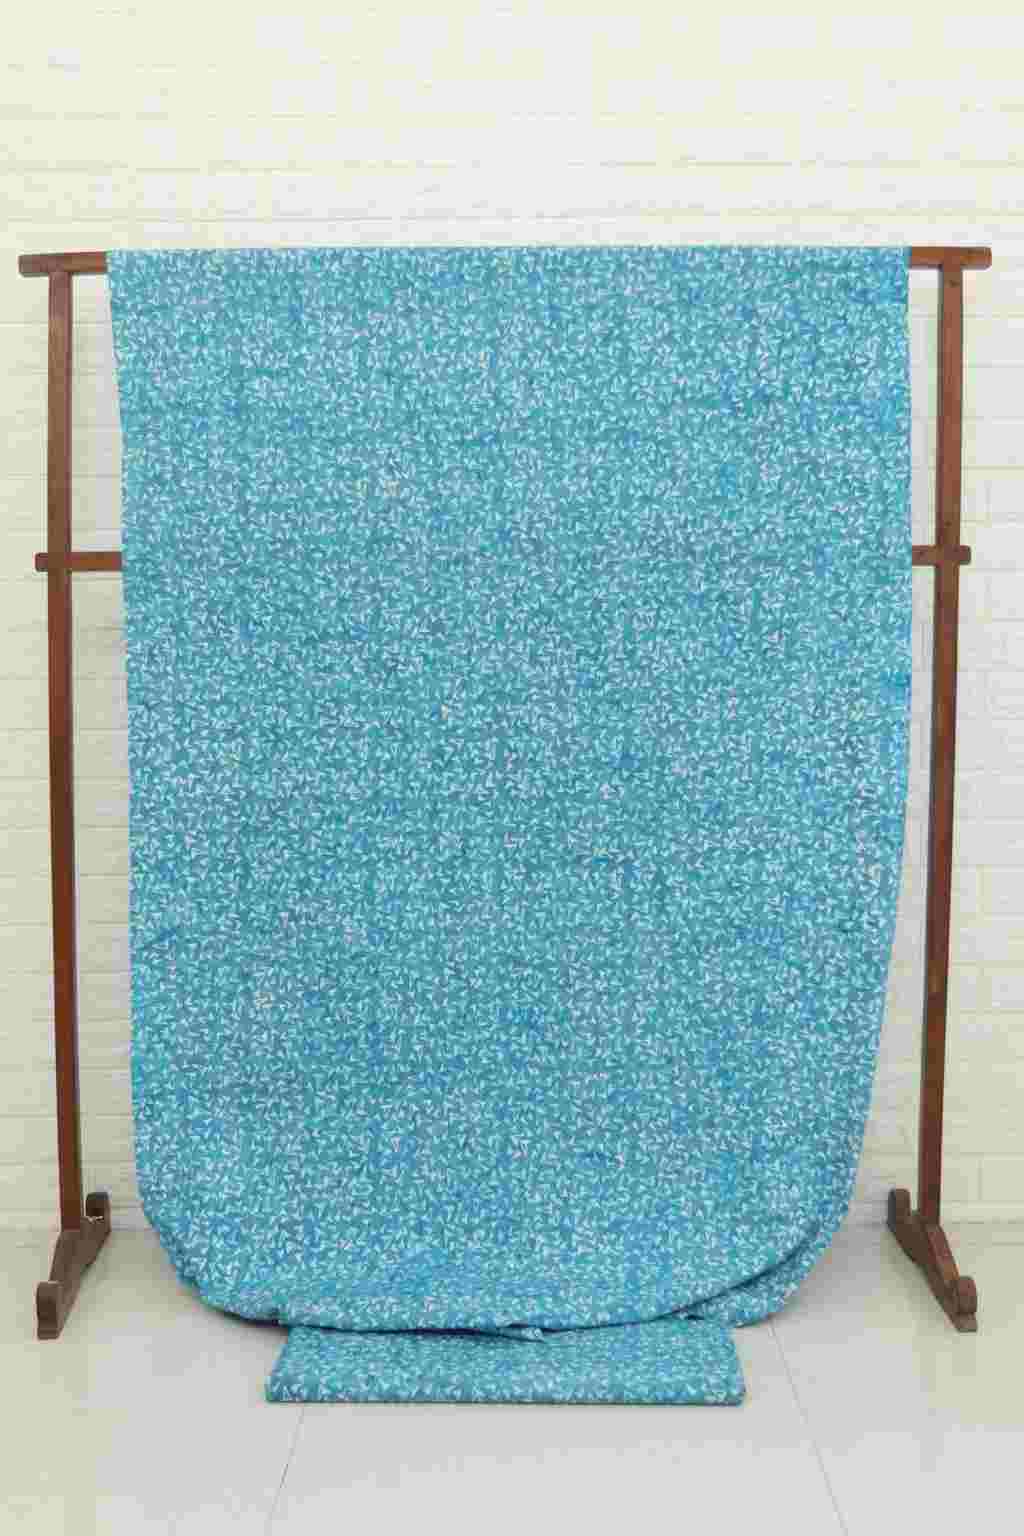 Batik fabric for quilting Virginia